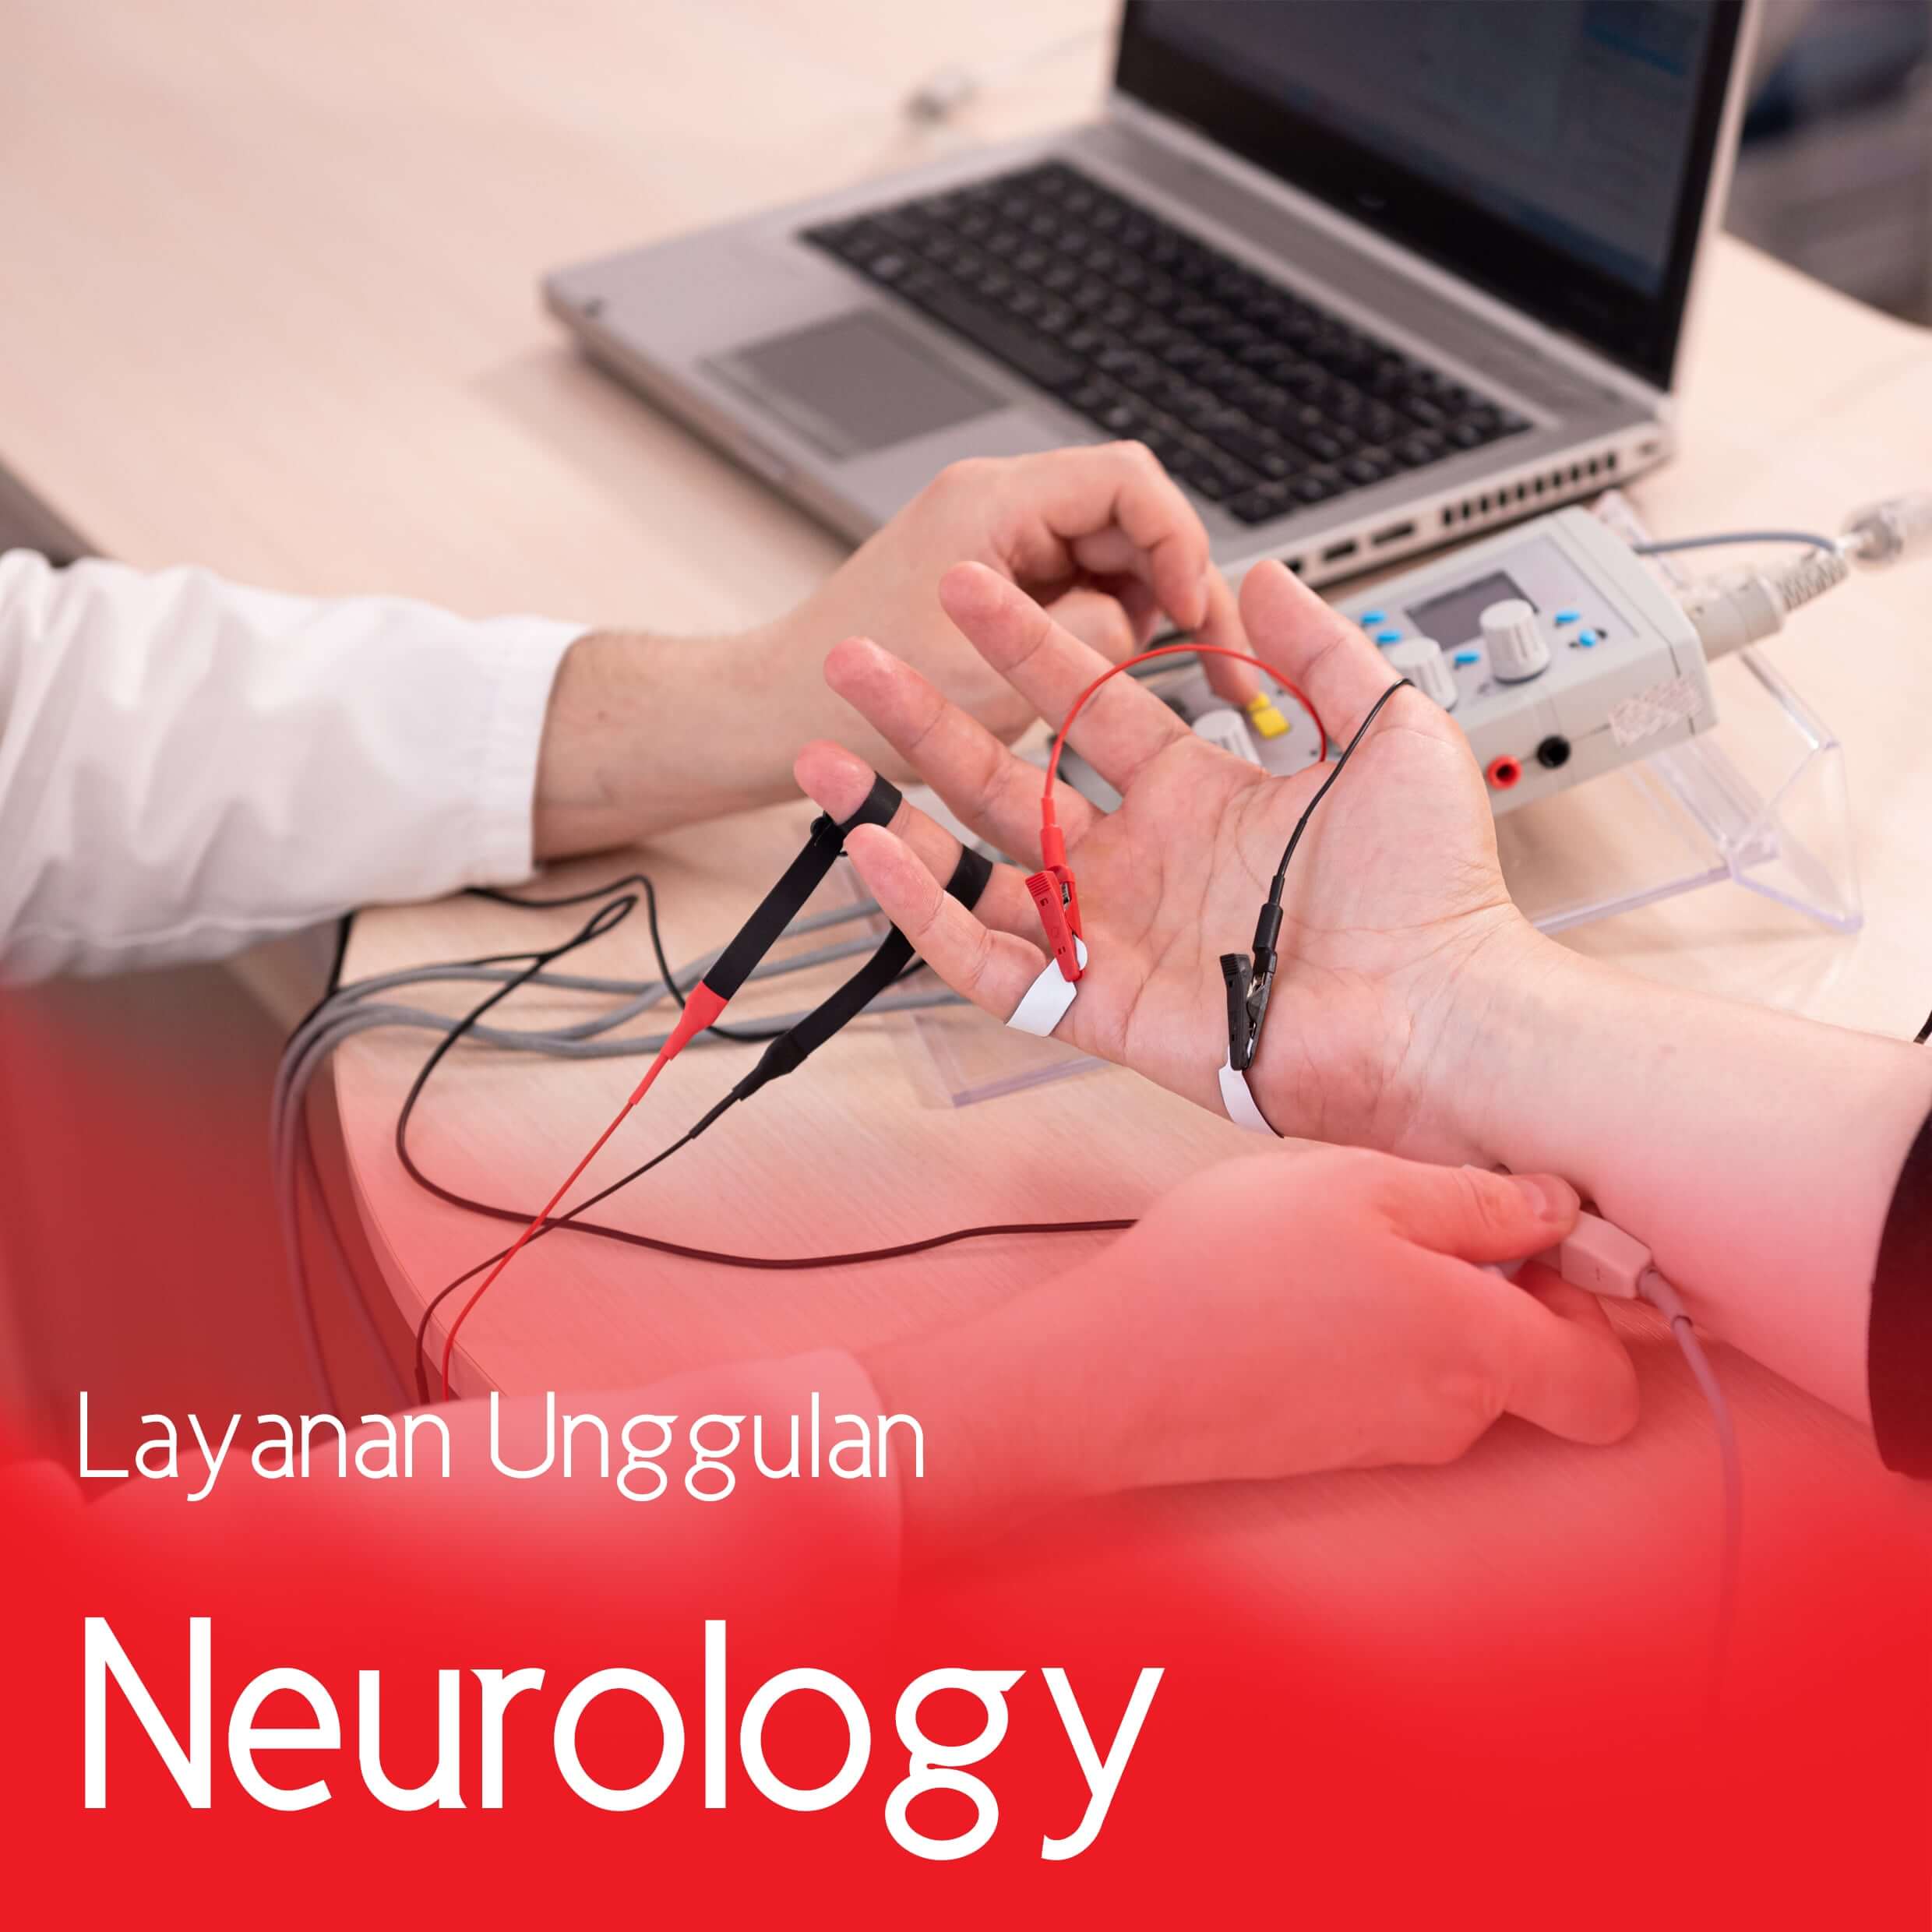 Layanan Spesialis Saraf / Neurology